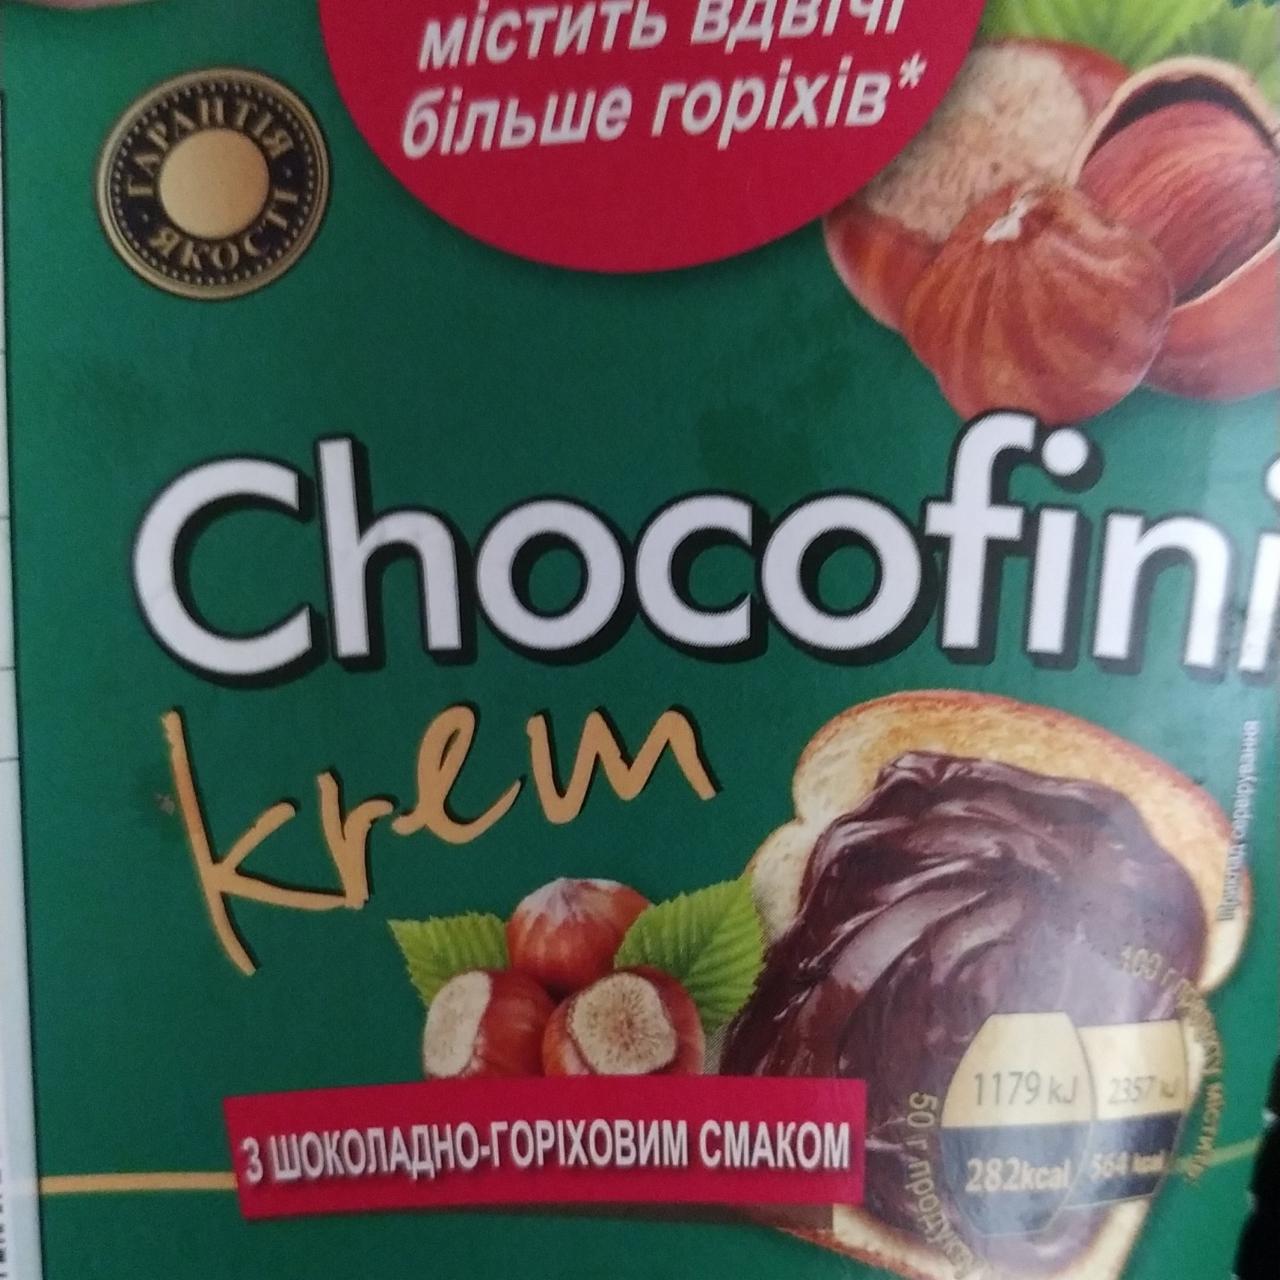 Фото - Крем с шокладно-ореховым вкусом Chocofini